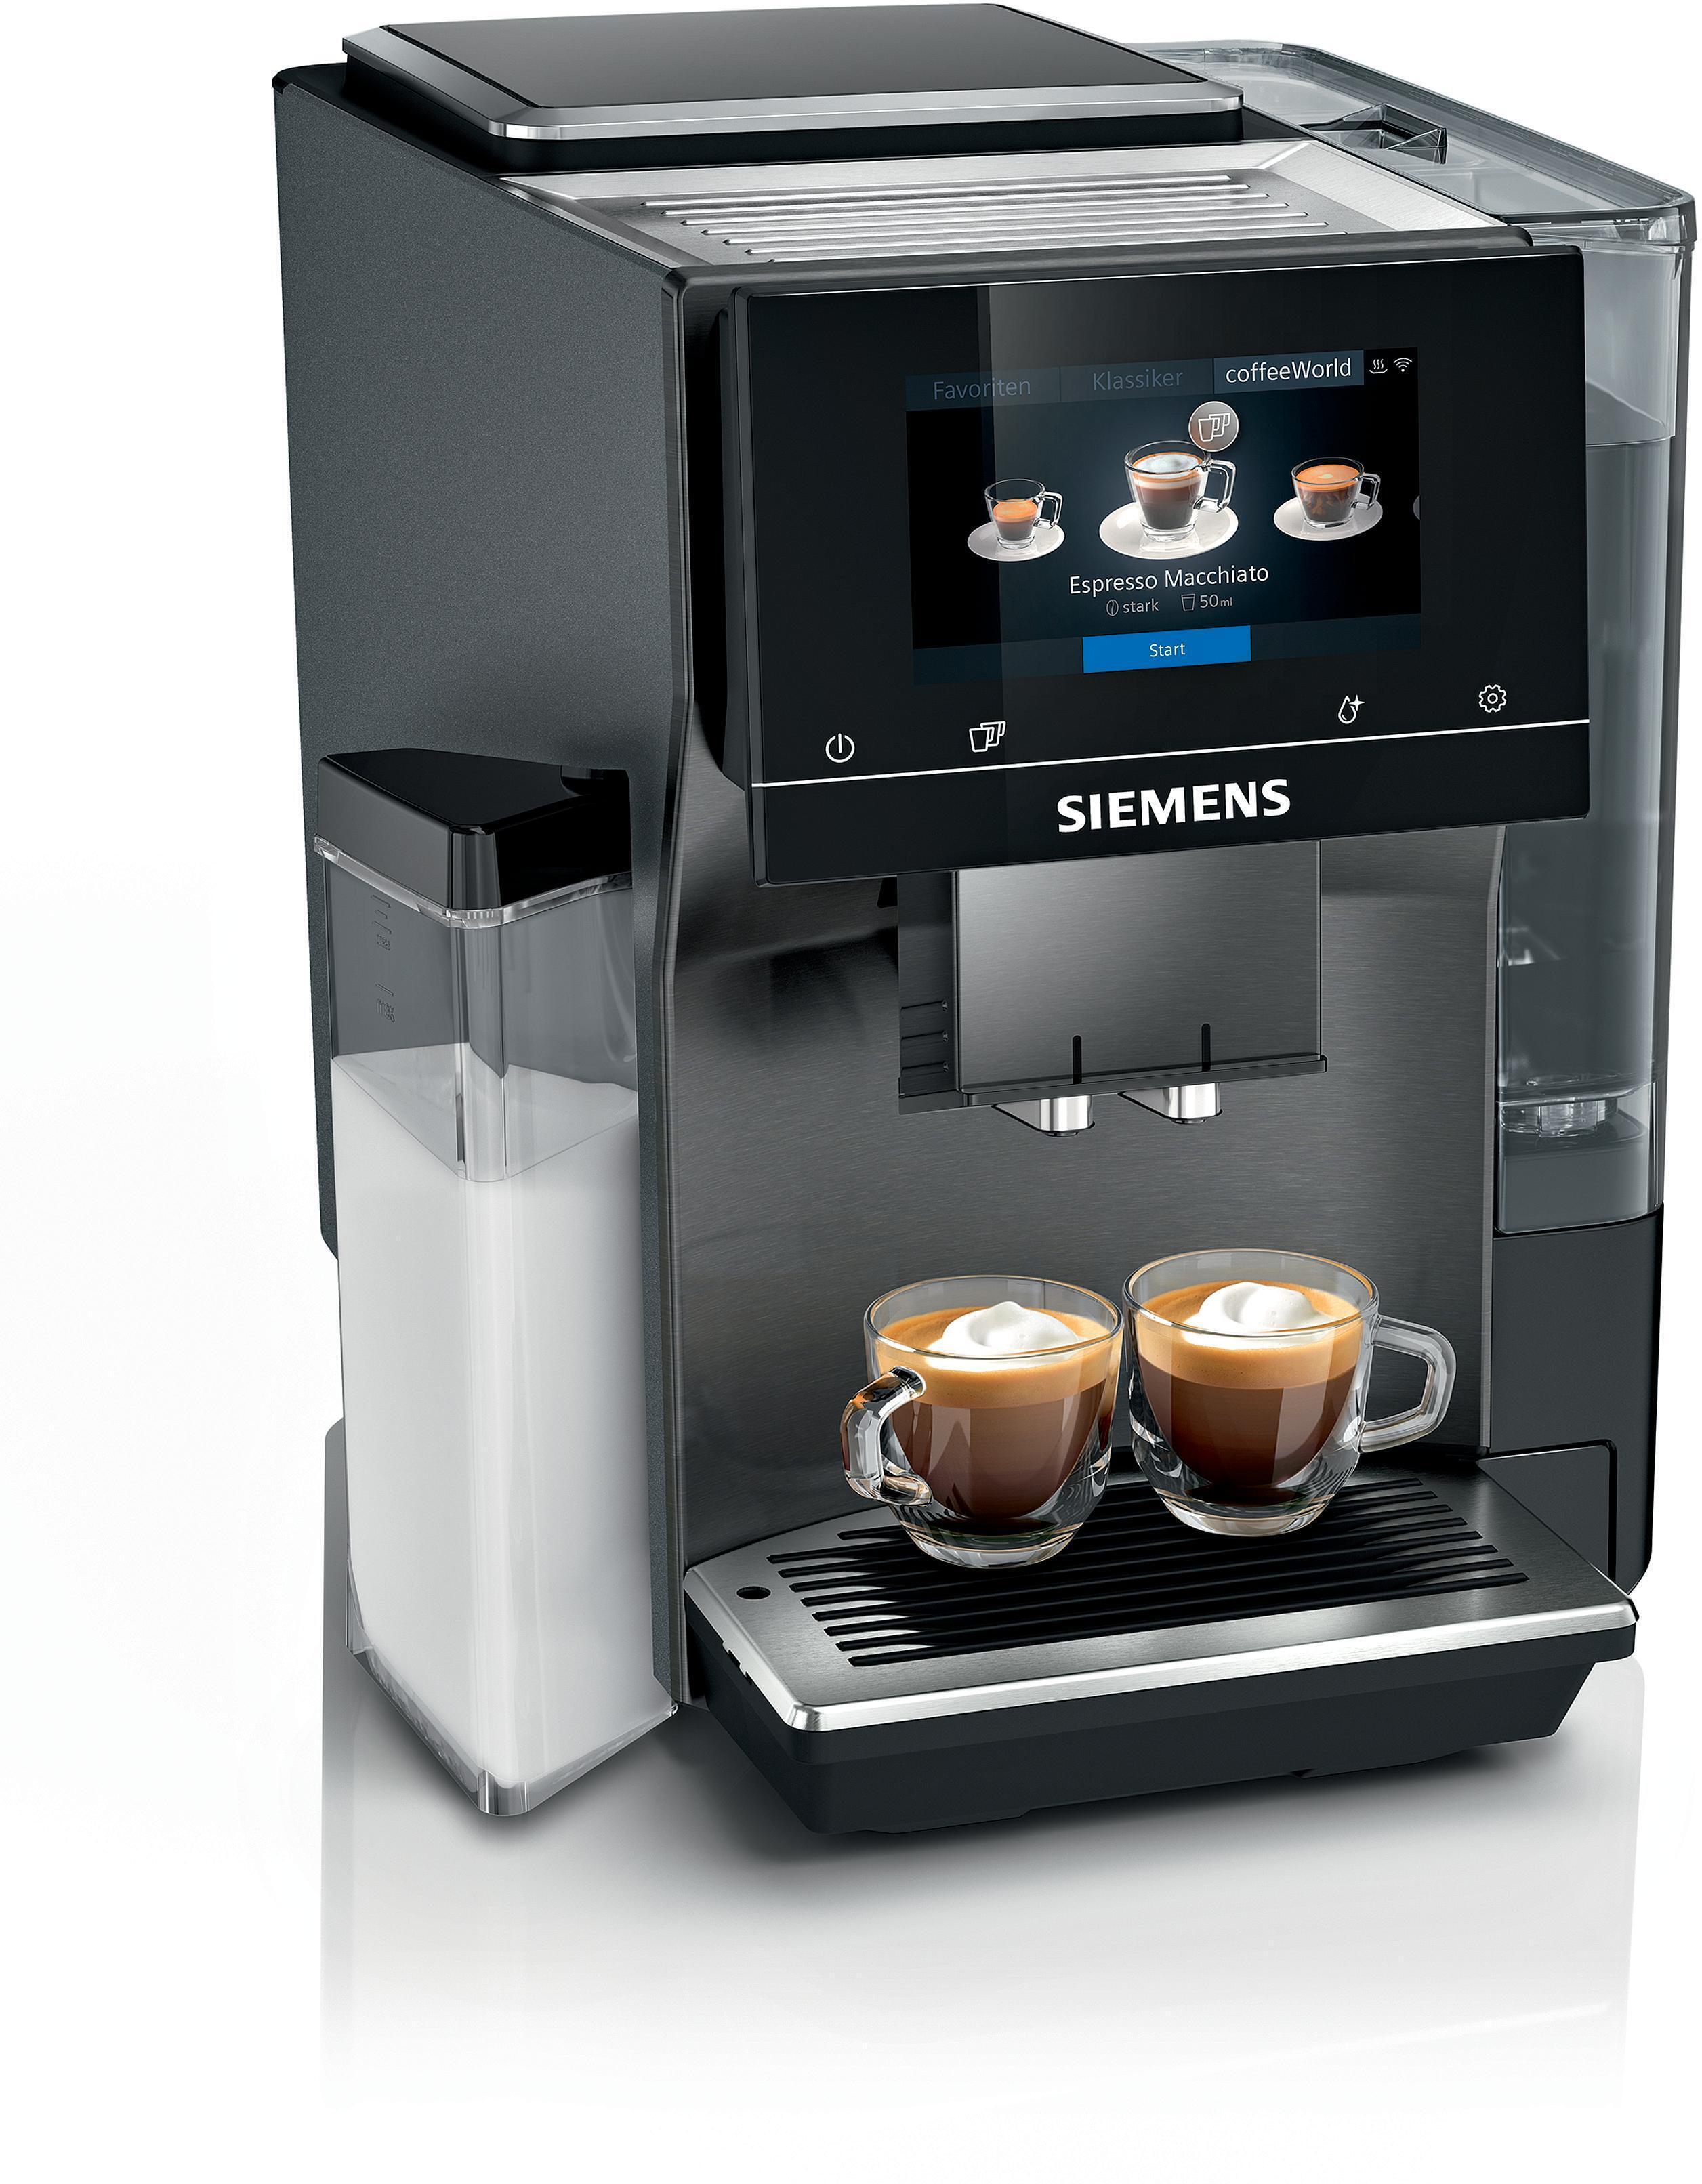 Negen met de klok mee kennisgeving Siemens TQ707DF5 extraKlasse koffiemachine blacksteel